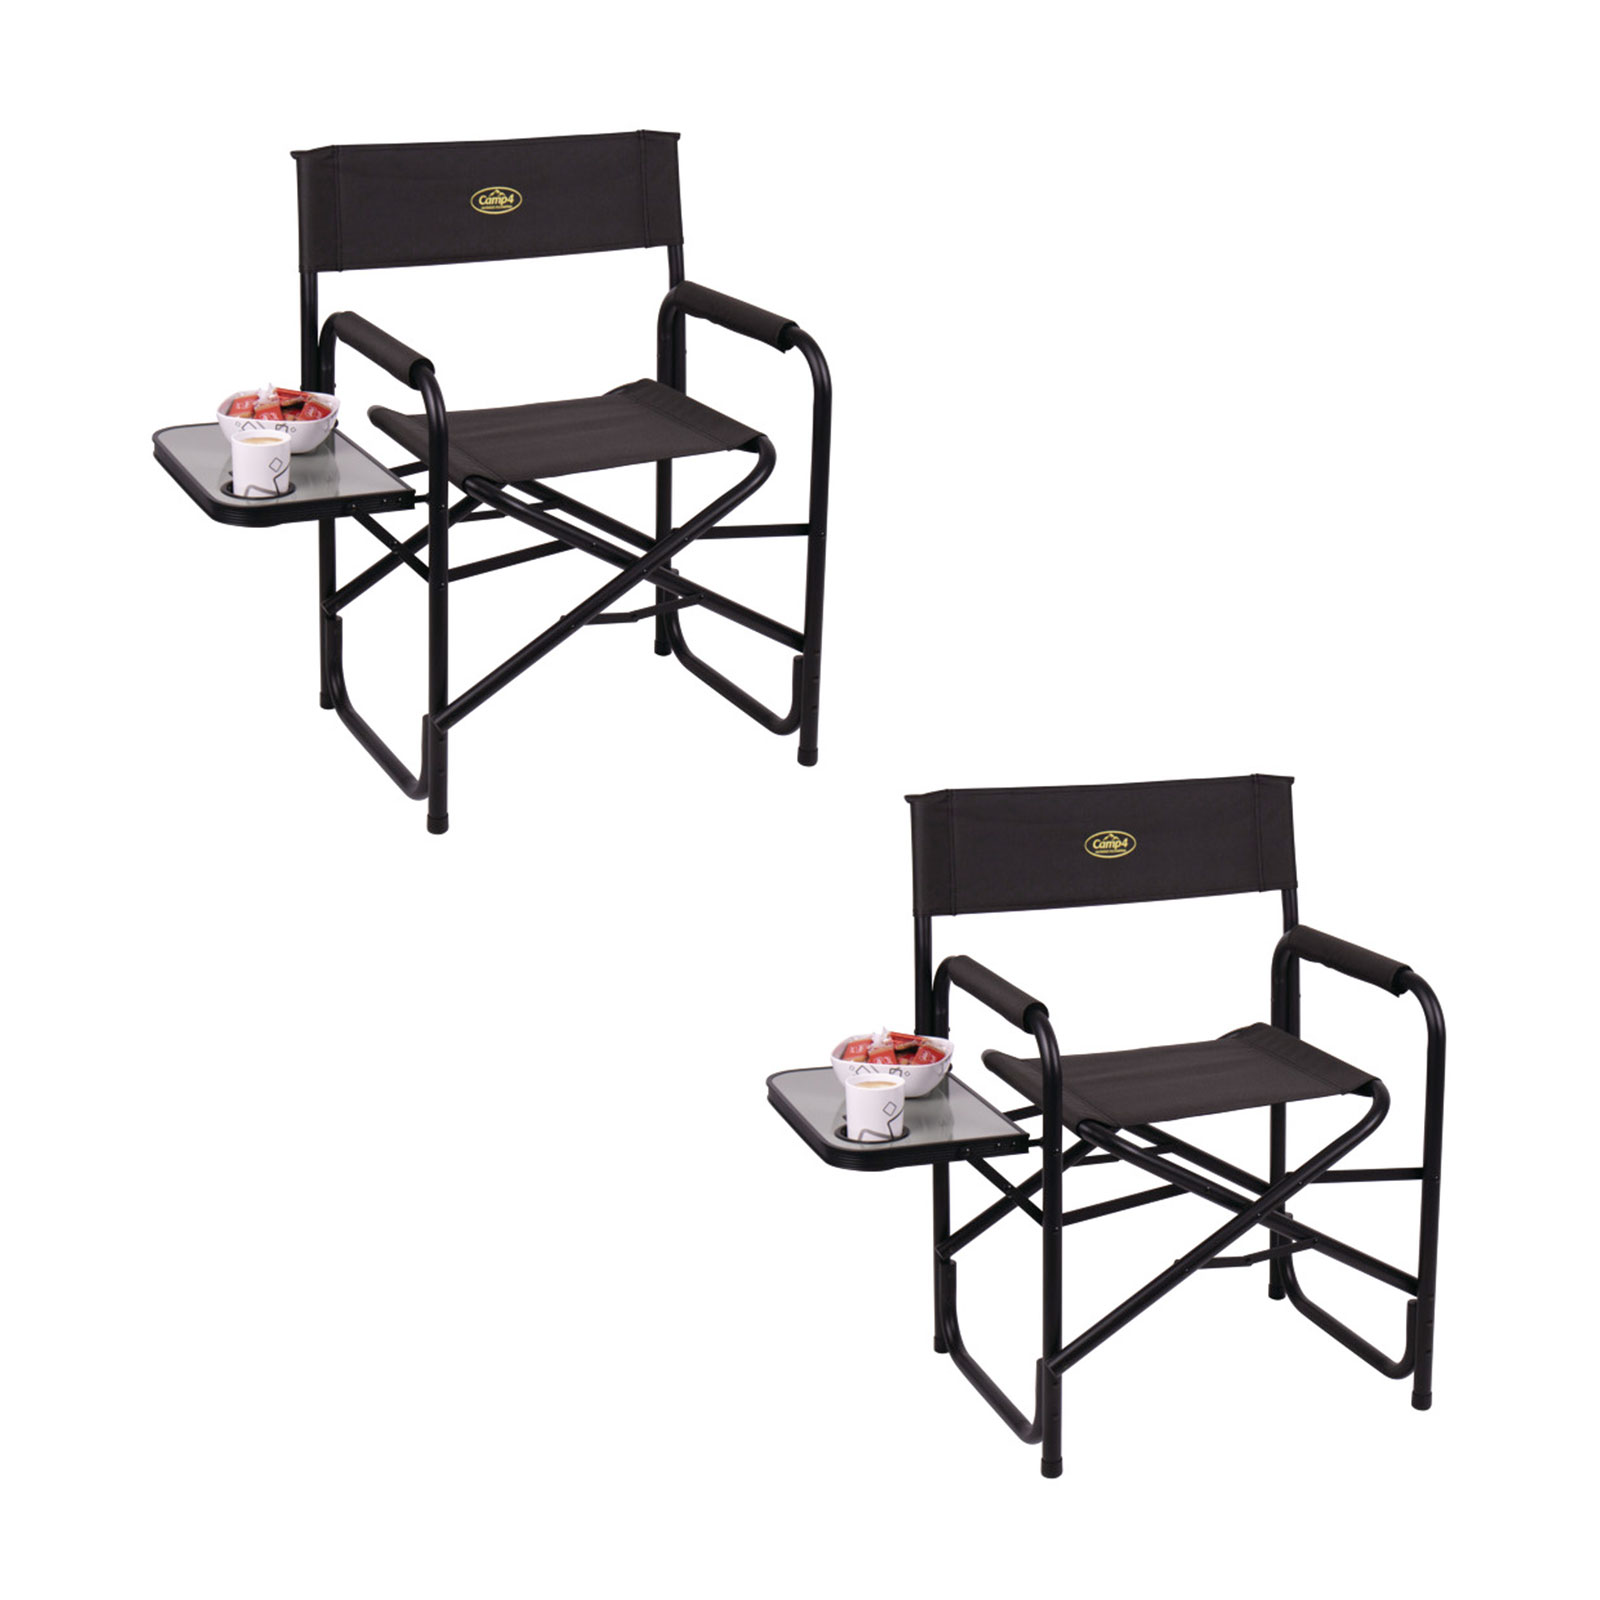 2x Campingstuhl klappbar, schwarz, Regiestuhl mit Seitentisch und Getränkehalter